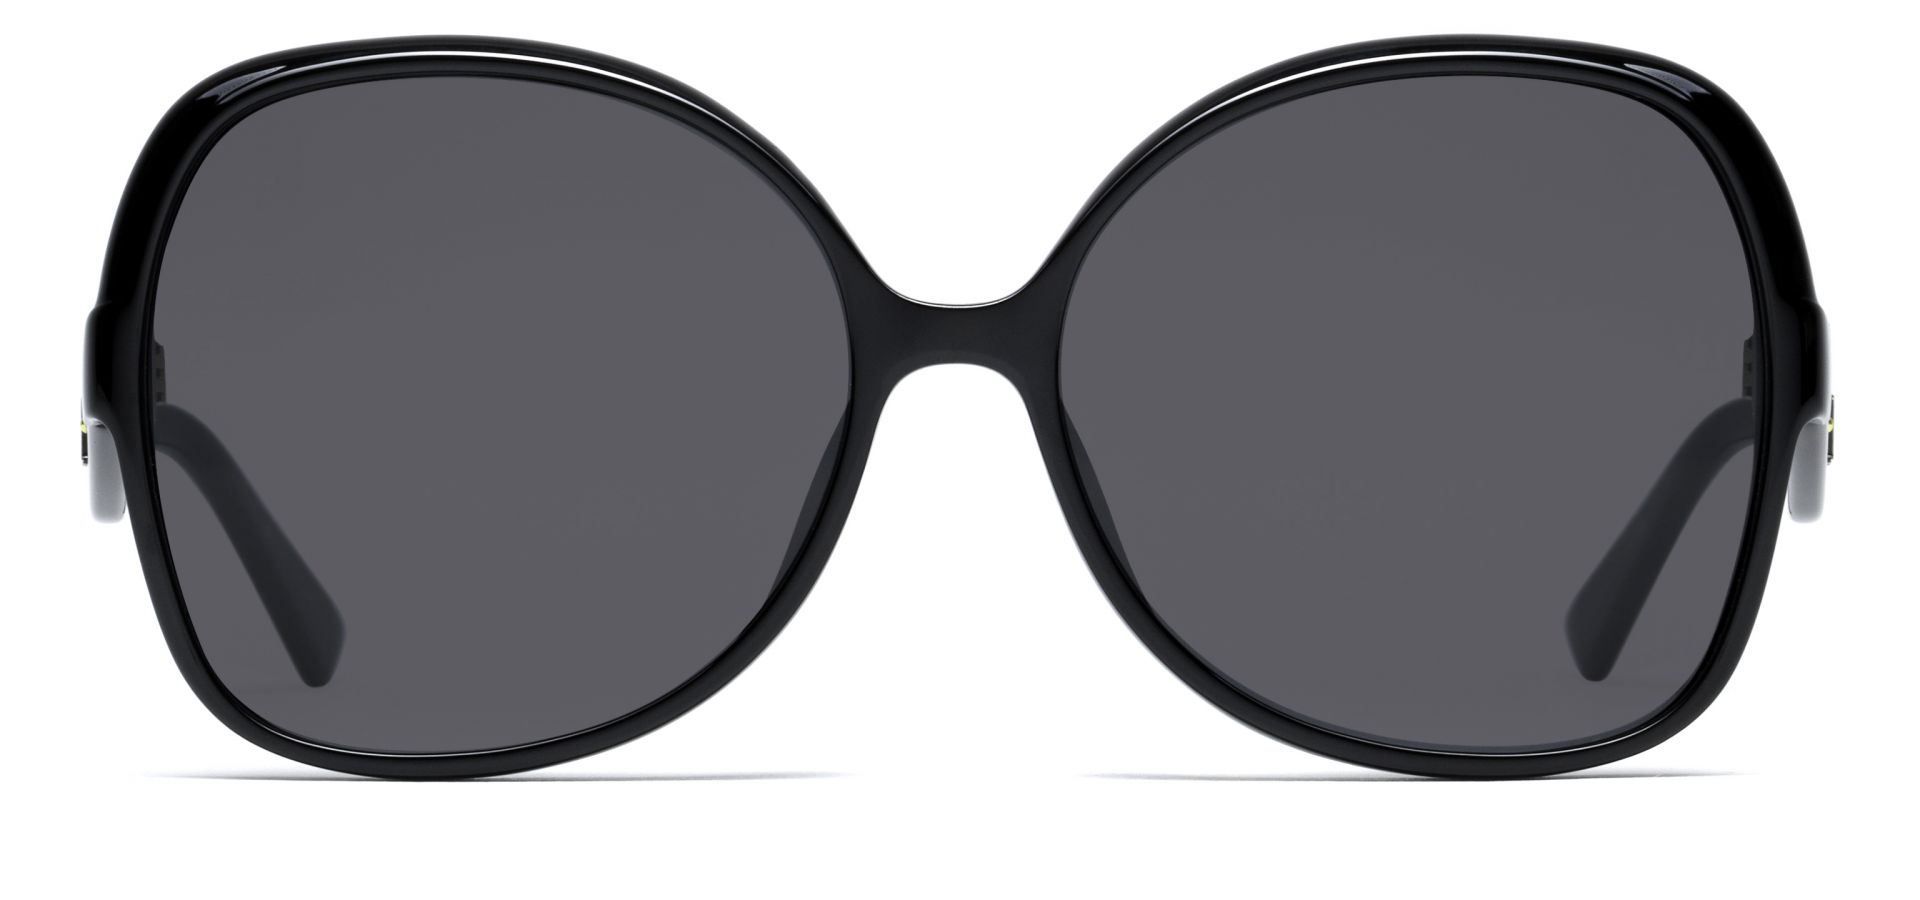 Sončna očala Christian Dior DIORNUANCEF: Velikost: 60/16/145, Spol: ženska, Material: acetat